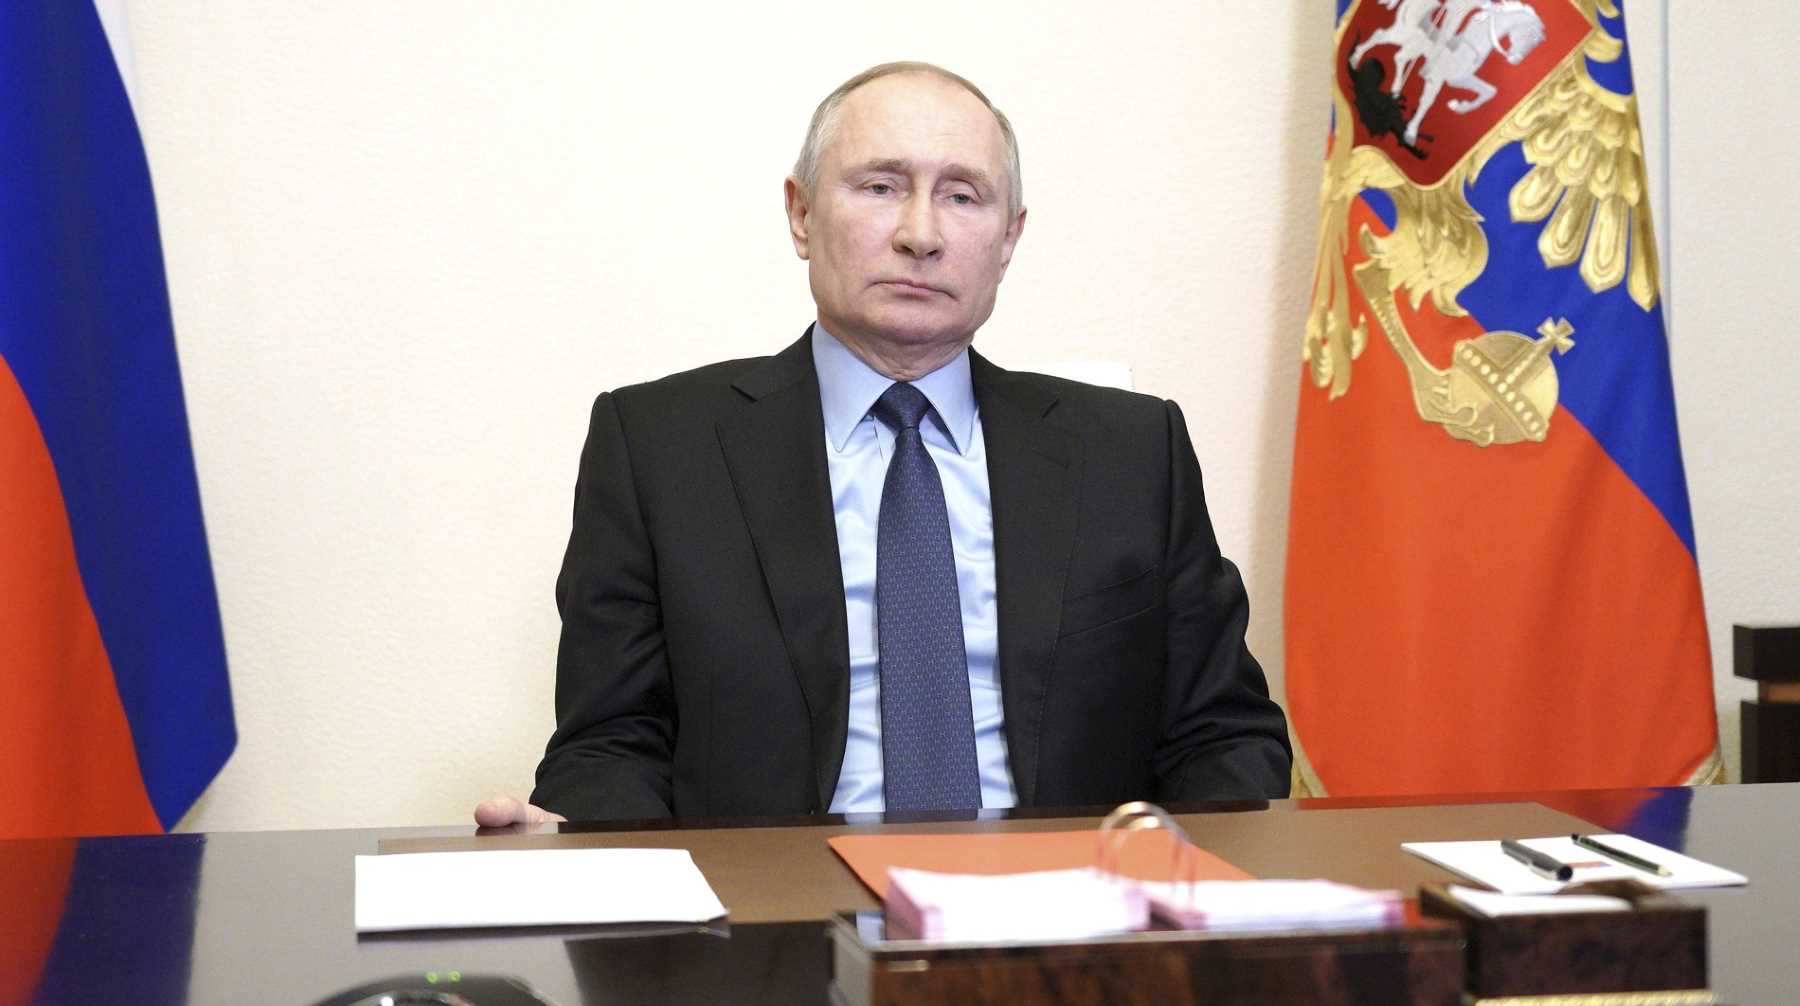 Президент обратил внимание на роль РПЦ в российском обществе Фото: © Global Look Press / Kremlin Pool